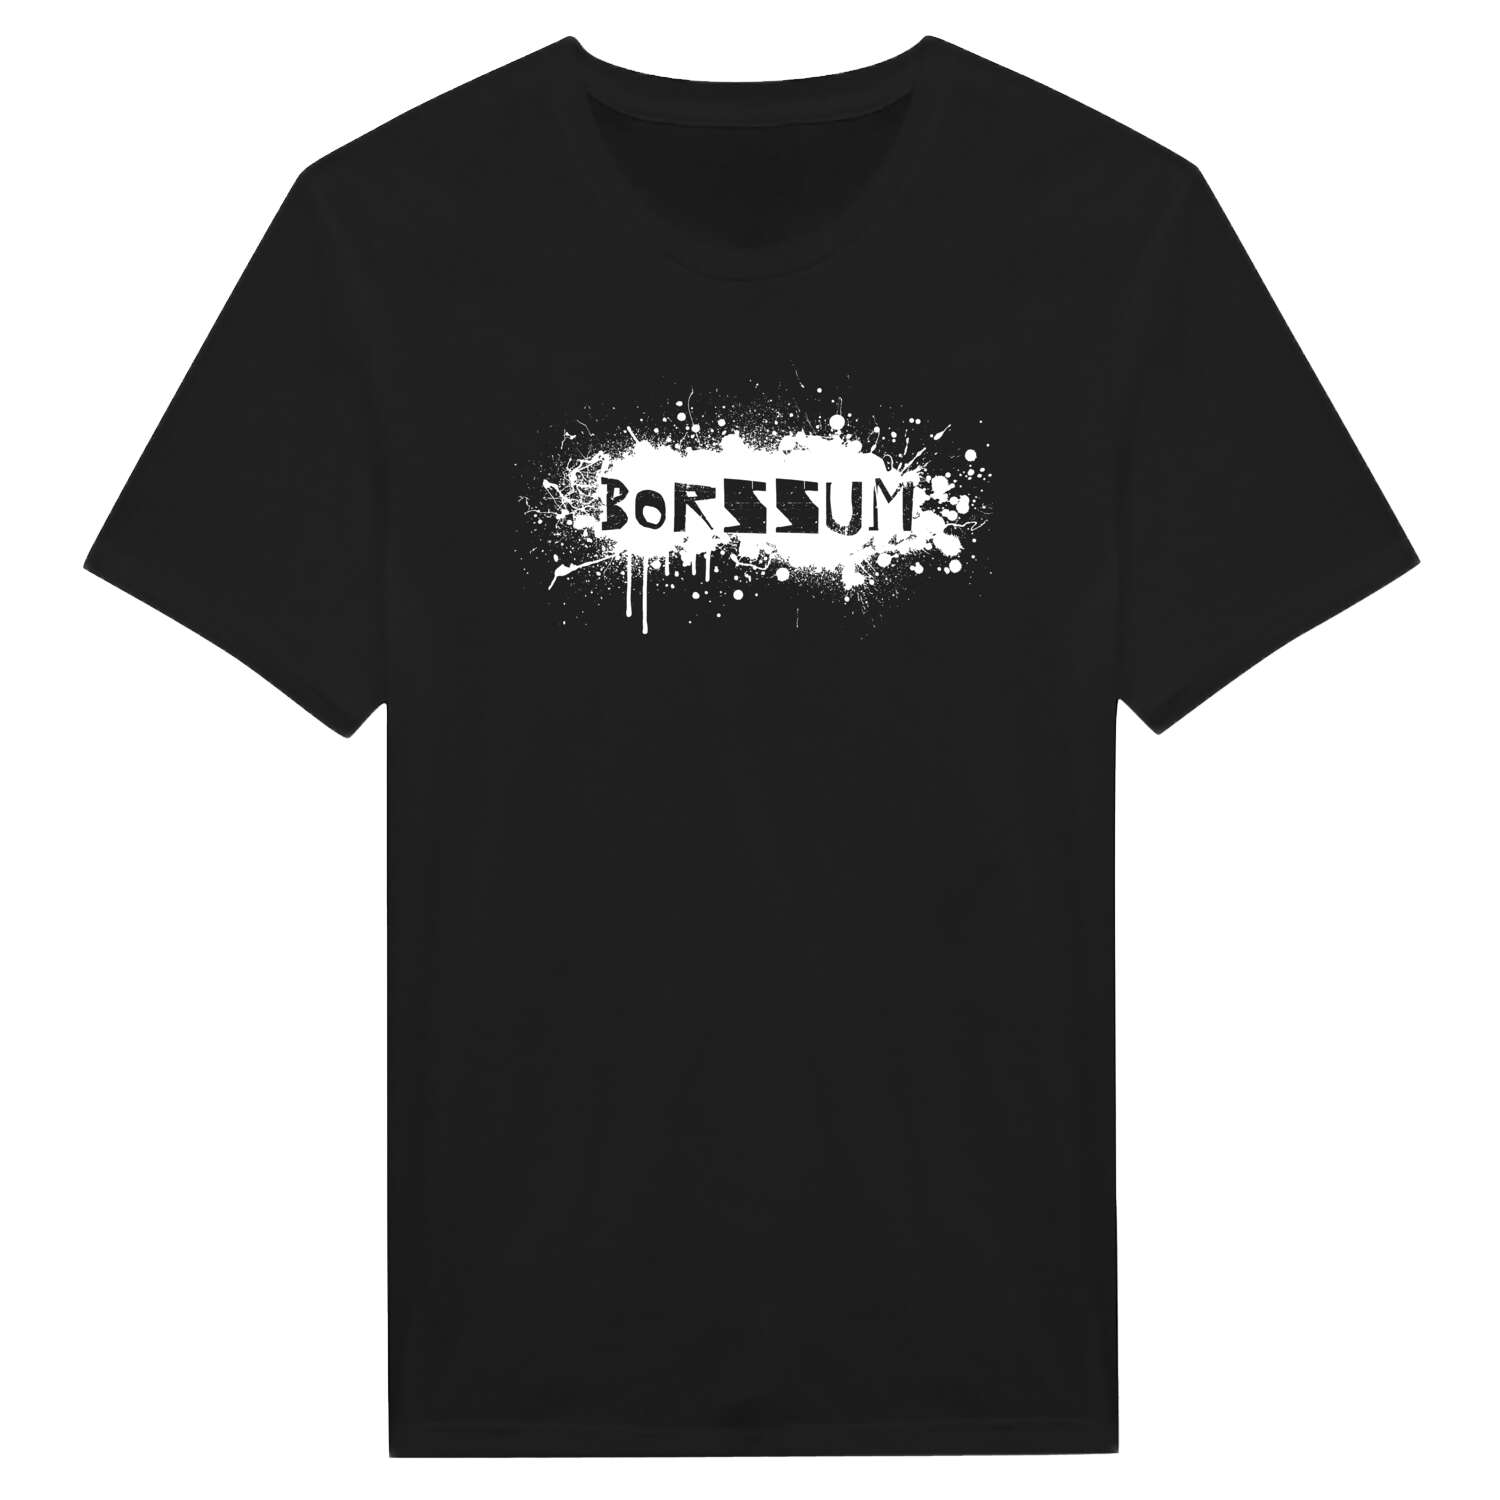 Borssum T-Shirt »Paint Splash Punk«